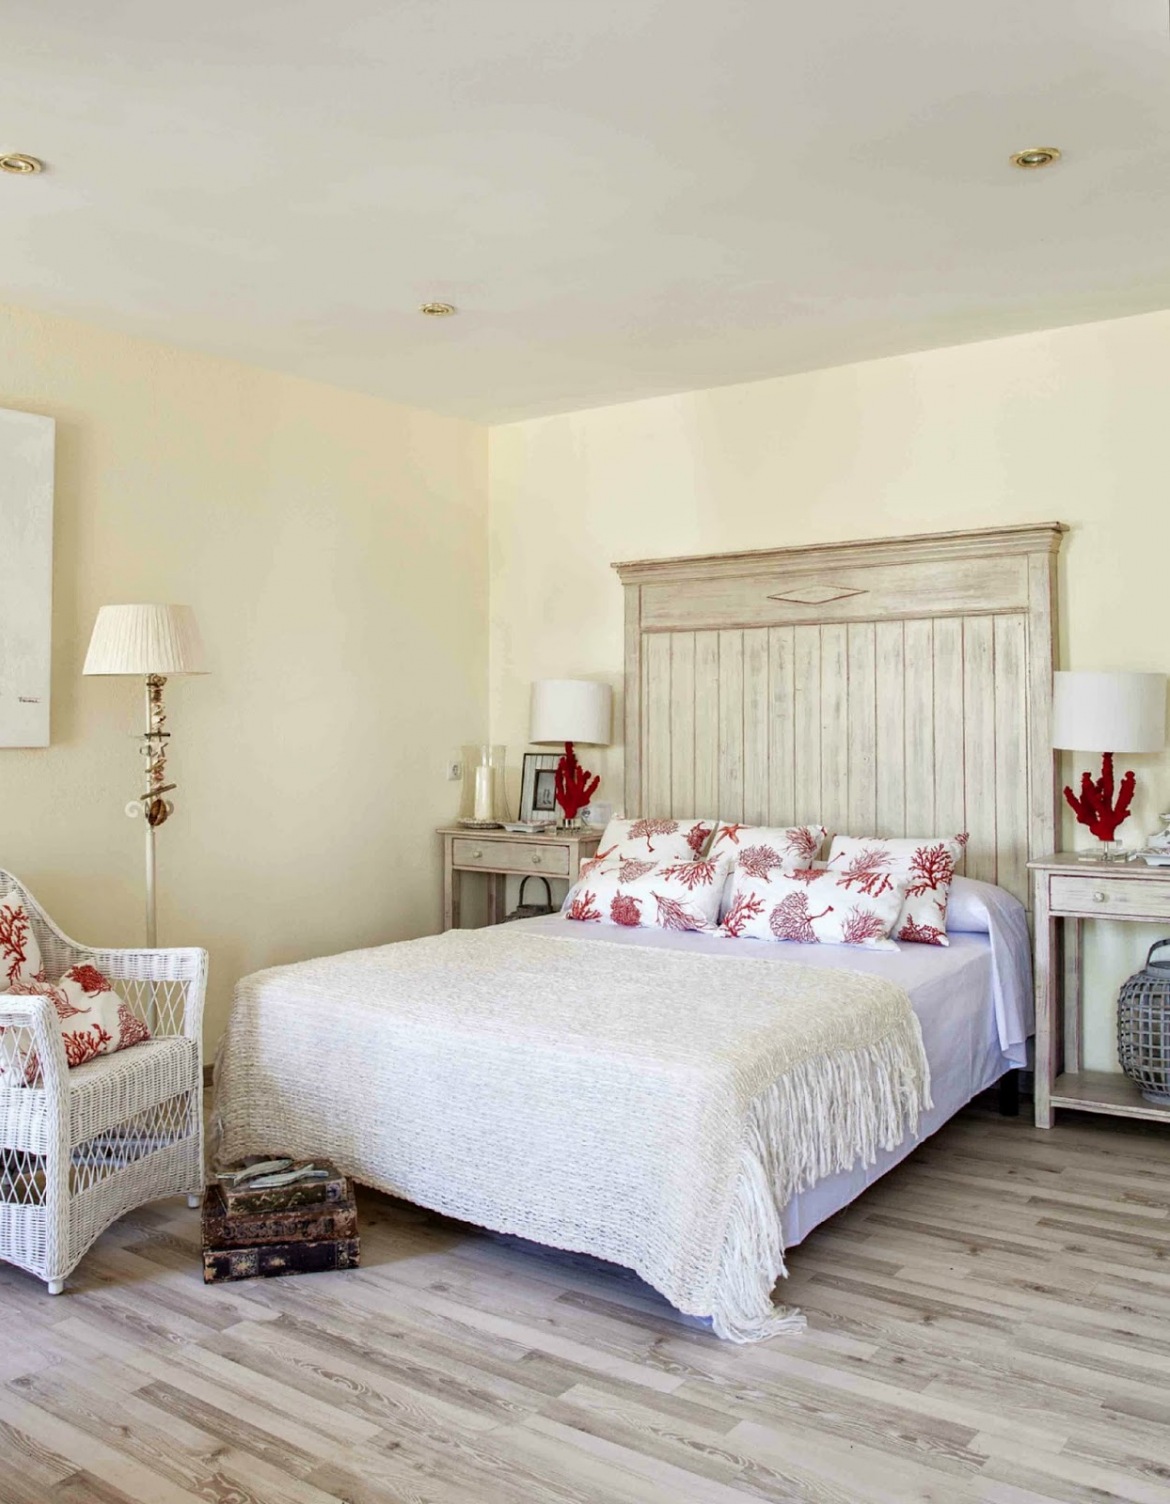 Drewniane bielone łóżko,biały wiklinowy fotel i parkiet w stylu vintage w sypialni z lampkami z czerwonego koralowca (25014)